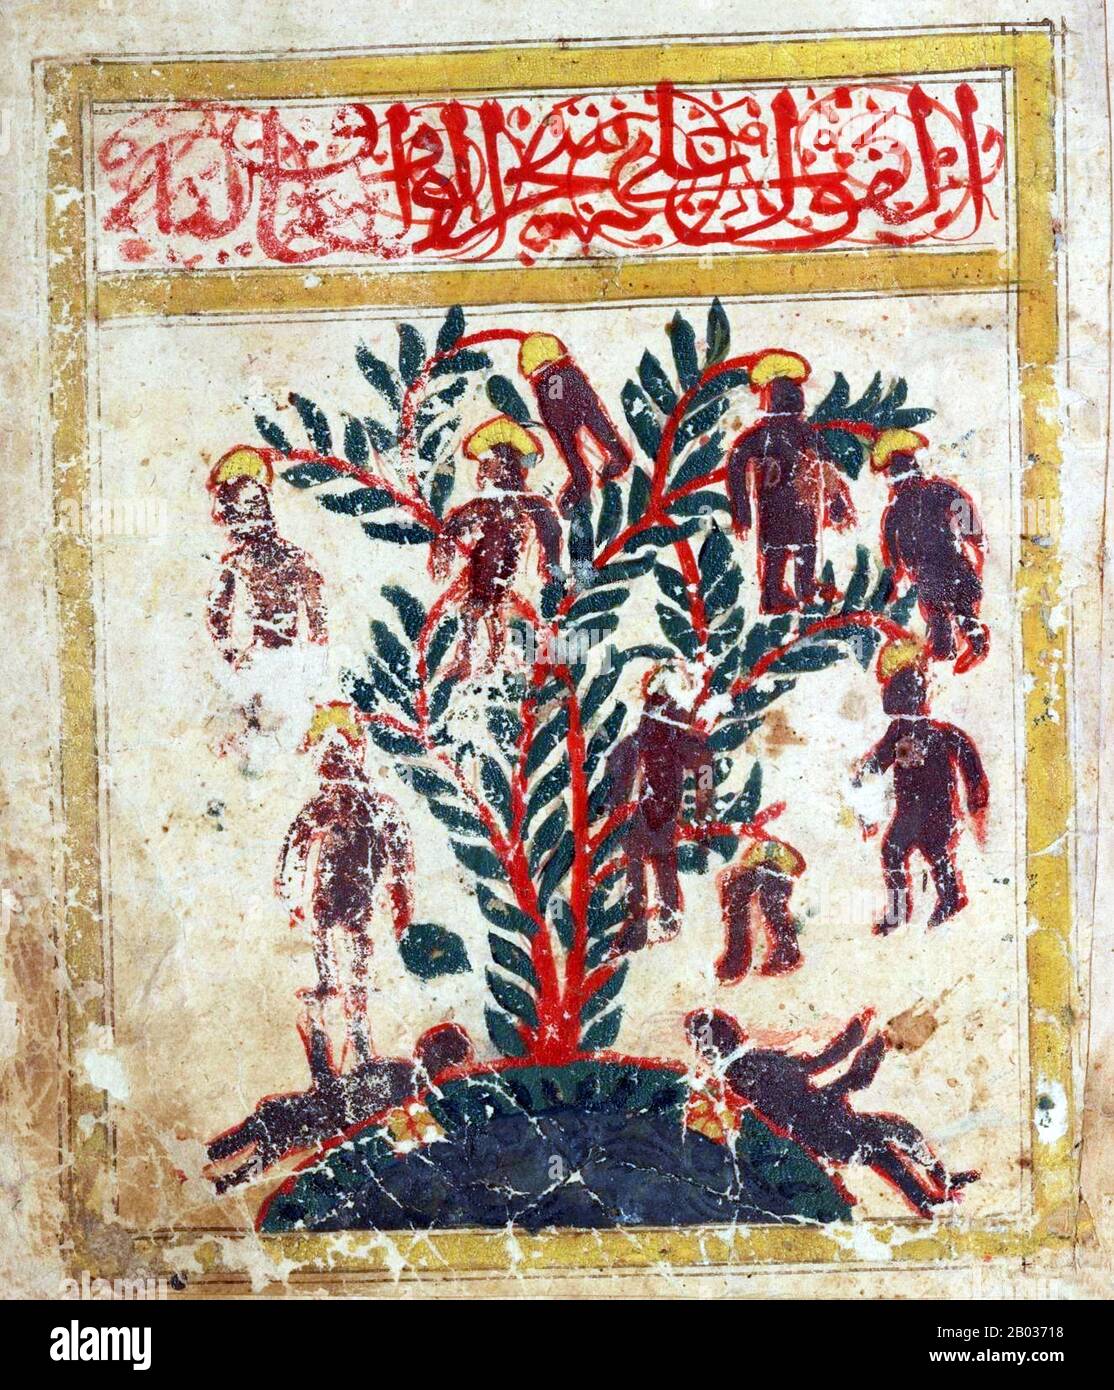 Il Waqwaq è un albero gigante che porta frutti umanoidi in lore indo-persiano. E 'simile al giapponese Jinmenju, un altro albero umano-Simile. Il Waqwaq è un albero Oracolare persiano, originario dell'India, i cui rami o frutti diventano teste di uomini, donne o animali mostruosi (a seconda della versione) tutti gridando 'Waq-Waq'. Nel mondo islamico, c'è una leggenda su un albero favoloso sull'isola di Waq Waq, che ha frutti sotto forma di figure umane, o teste che parlano e fanno profezie. Alessandro il Grande si dice abbia incontrato un tale albero parlante con frutto umano. Foto Stock